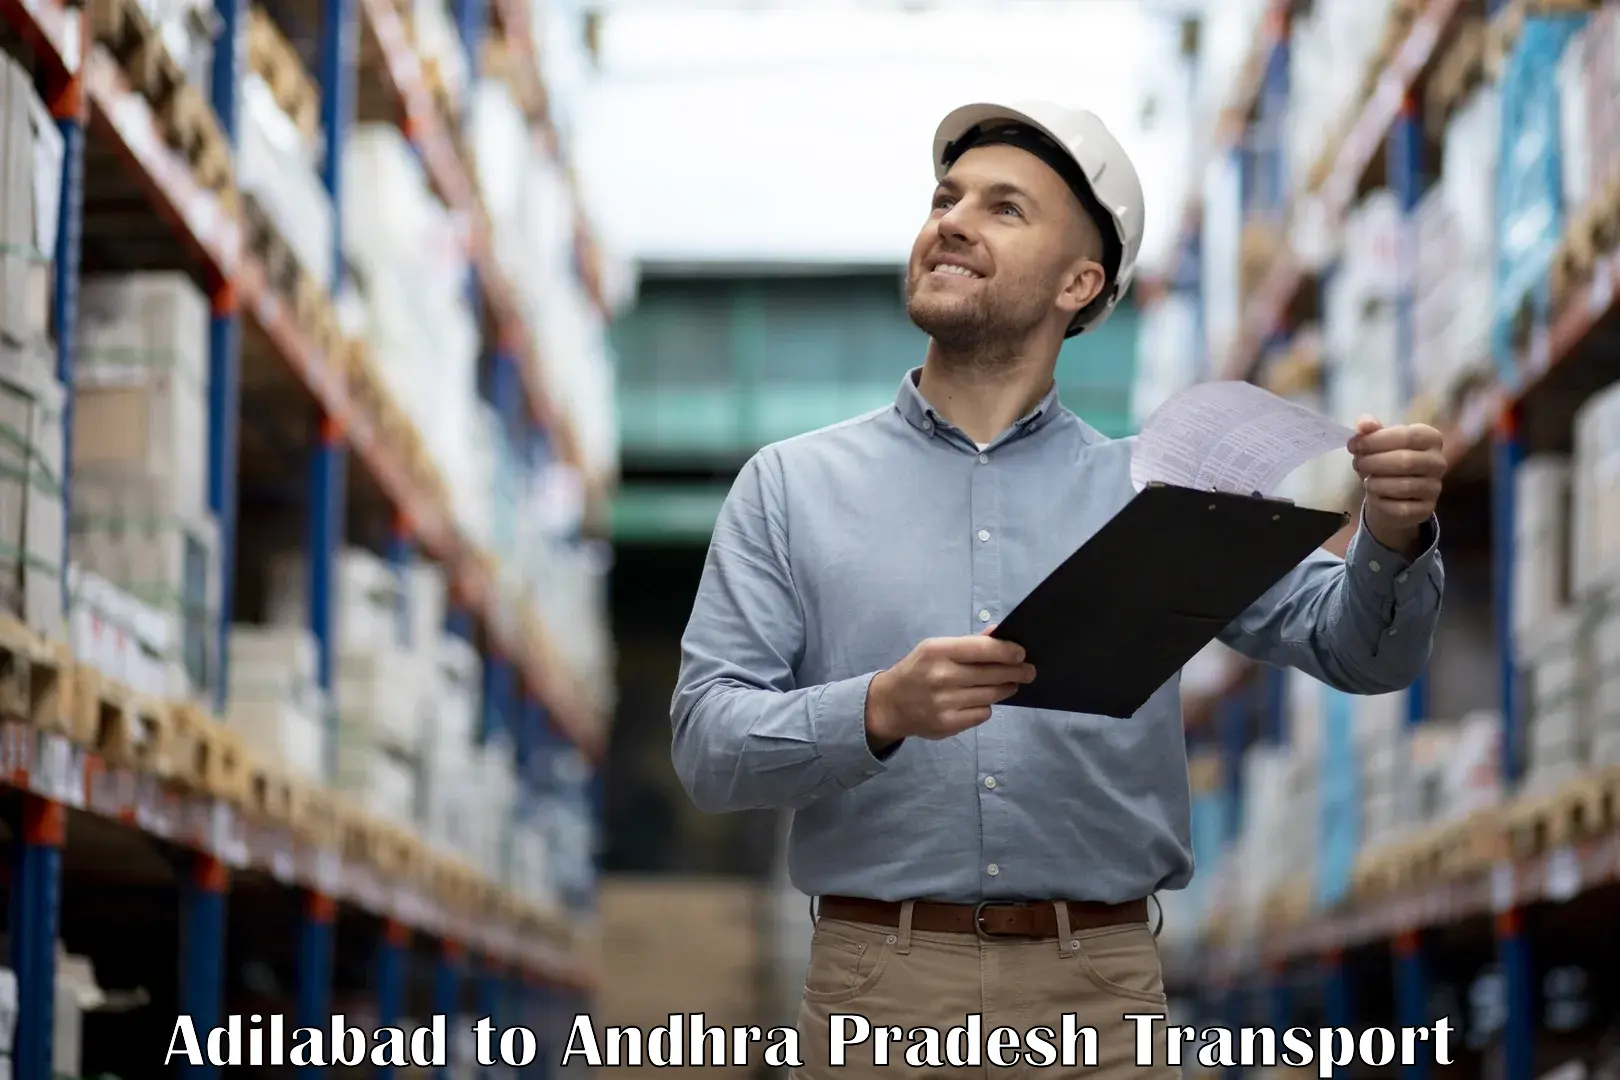 International cargo transportation services Adilabad to Chittoor